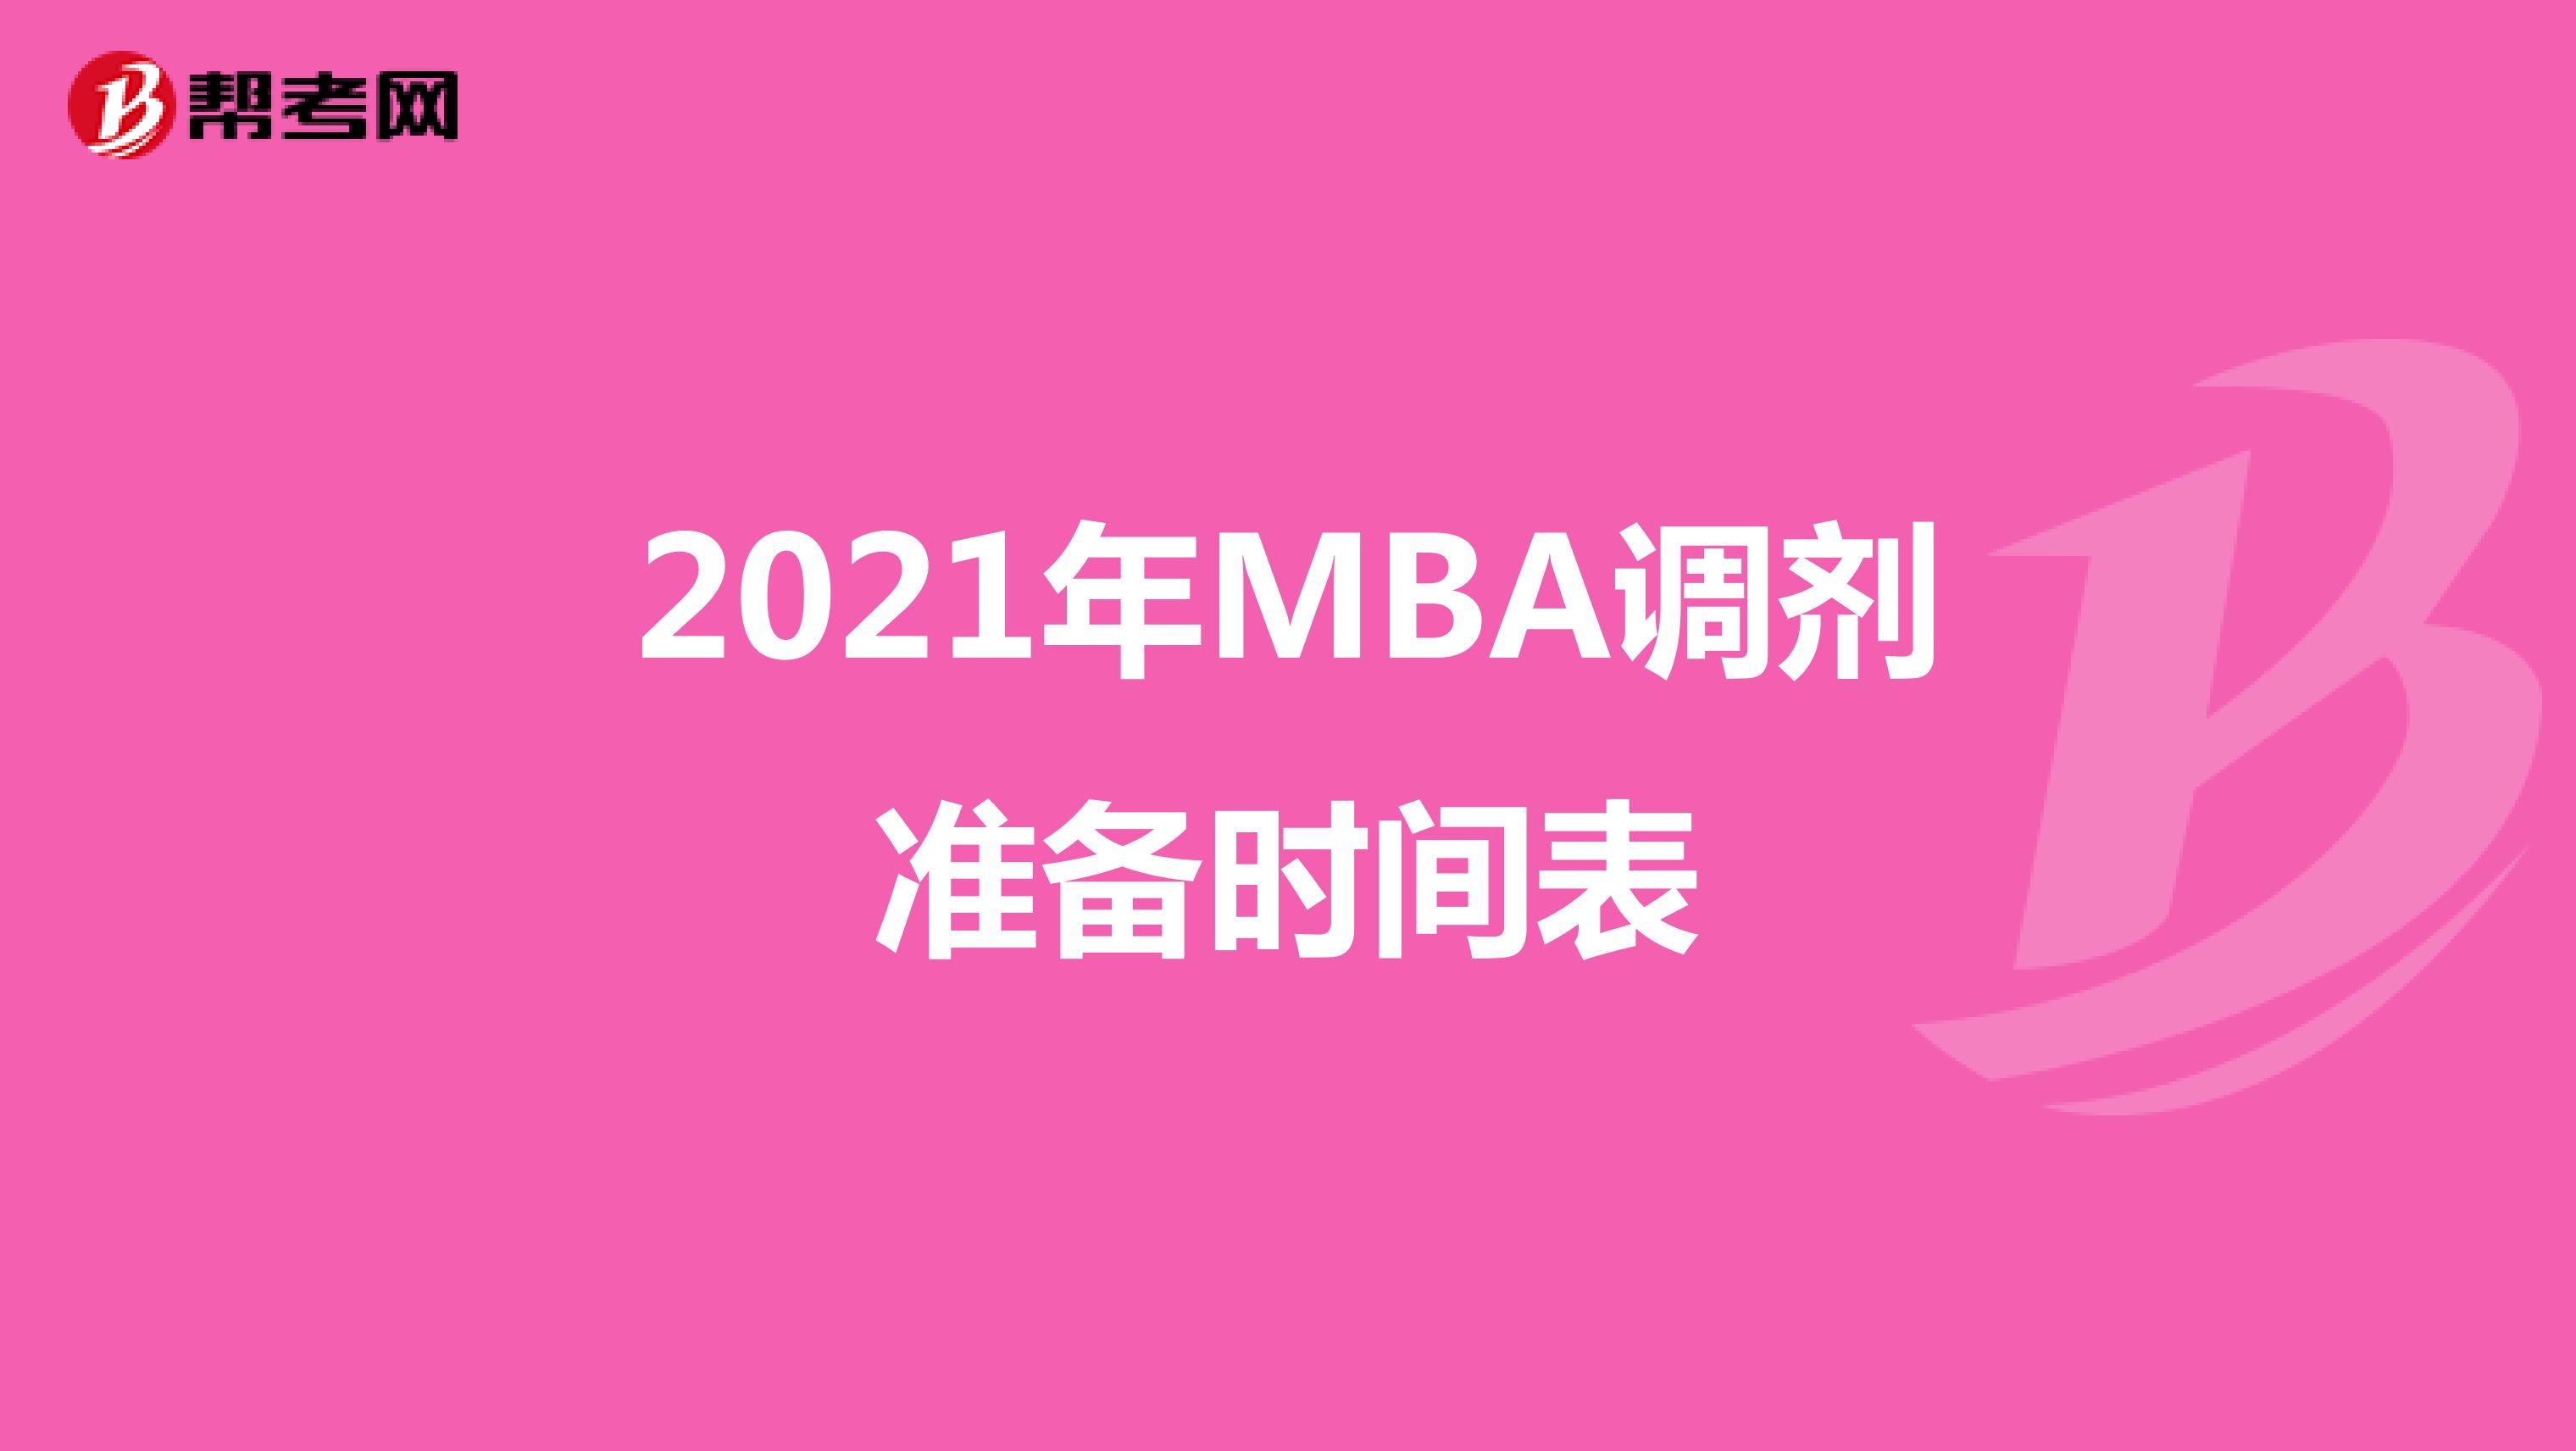 2021年MBA调剂准备时间表